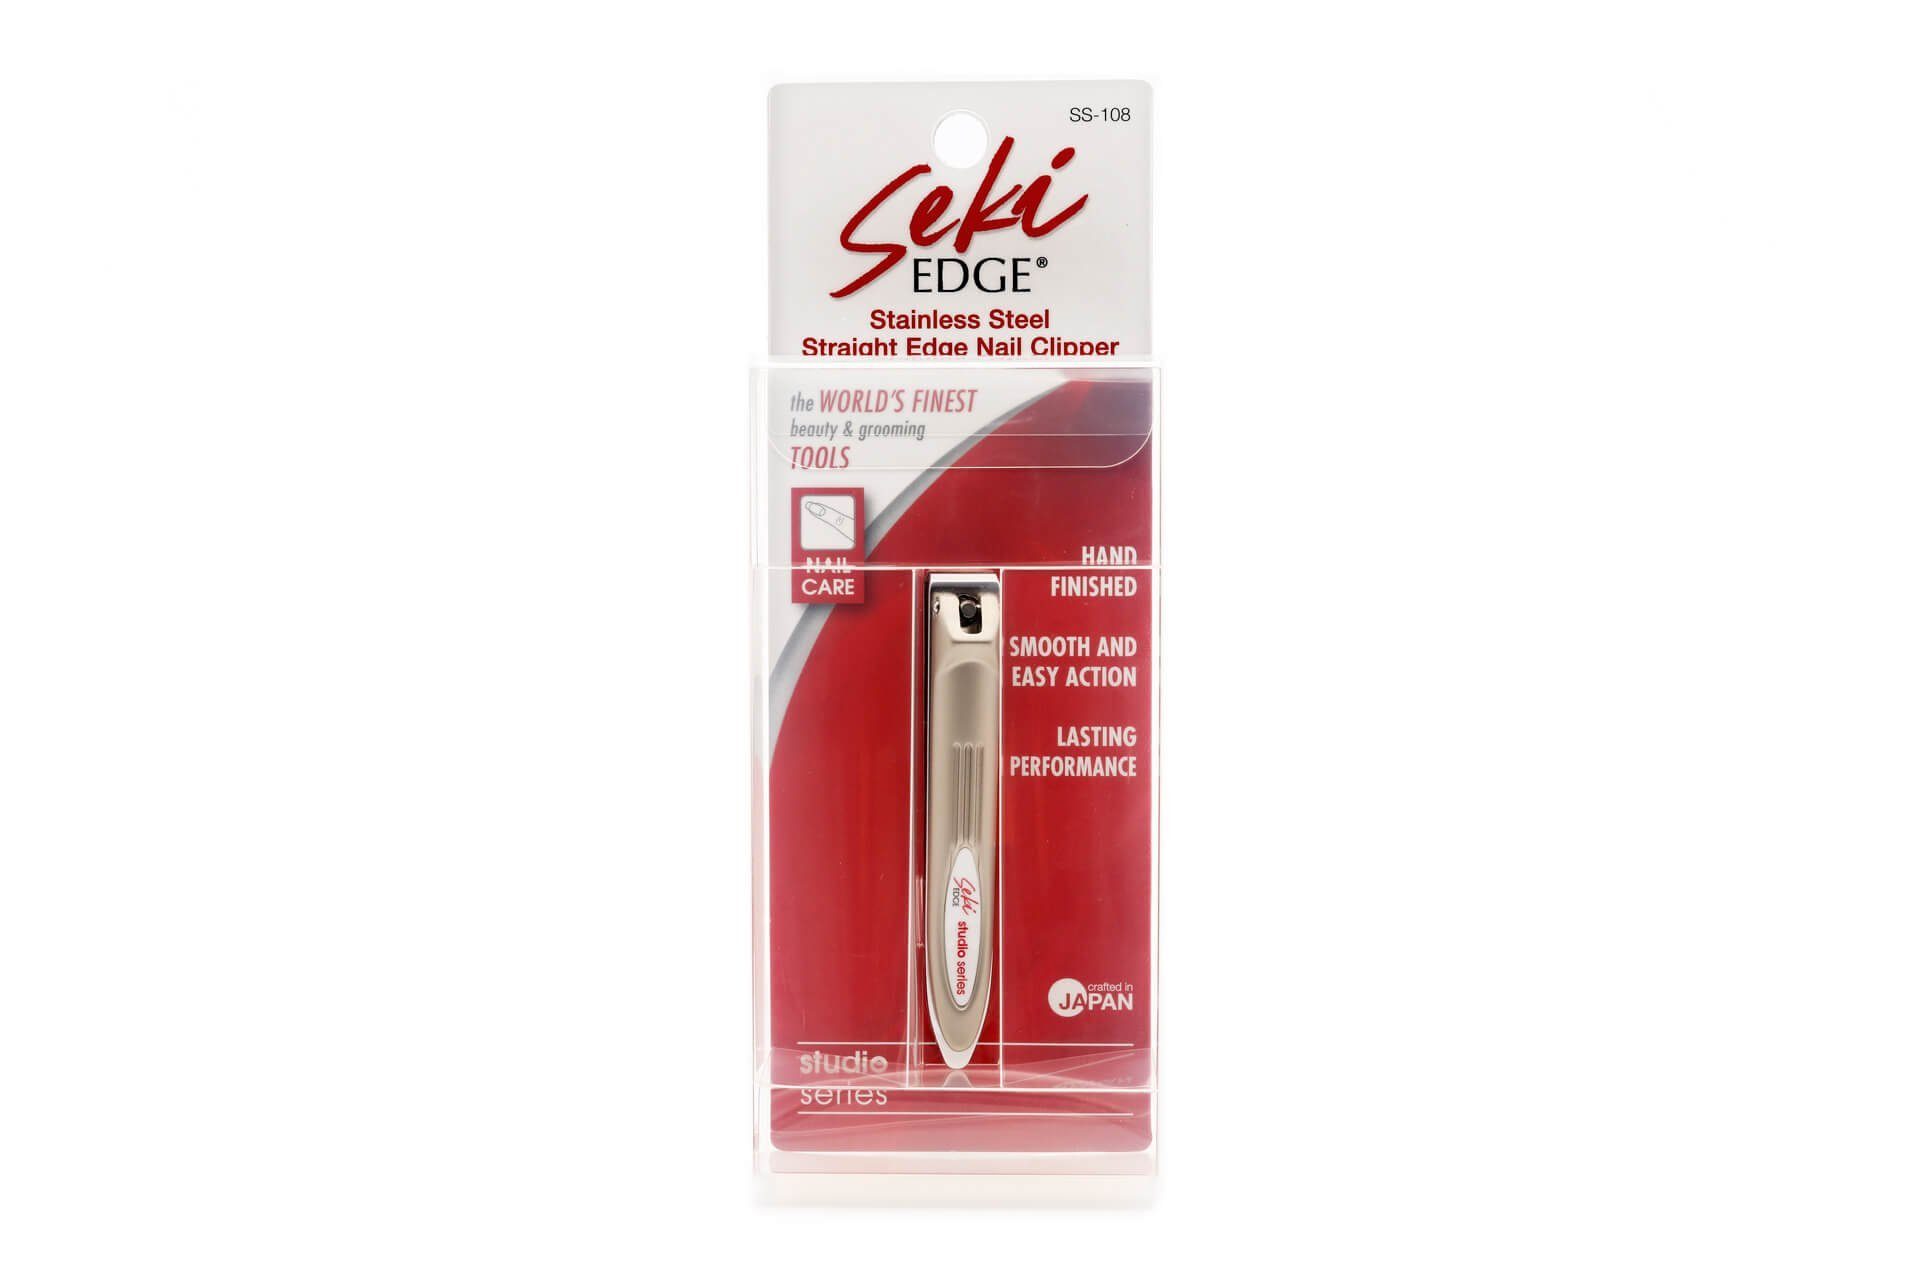 Seki EDGE Nagelknipser aus cm, 7.5x1.1x1.7 gerader Edelstahl mit Qualitätsprodukt Schneide Japan SS-108 handgeschärftes Nagelknipser